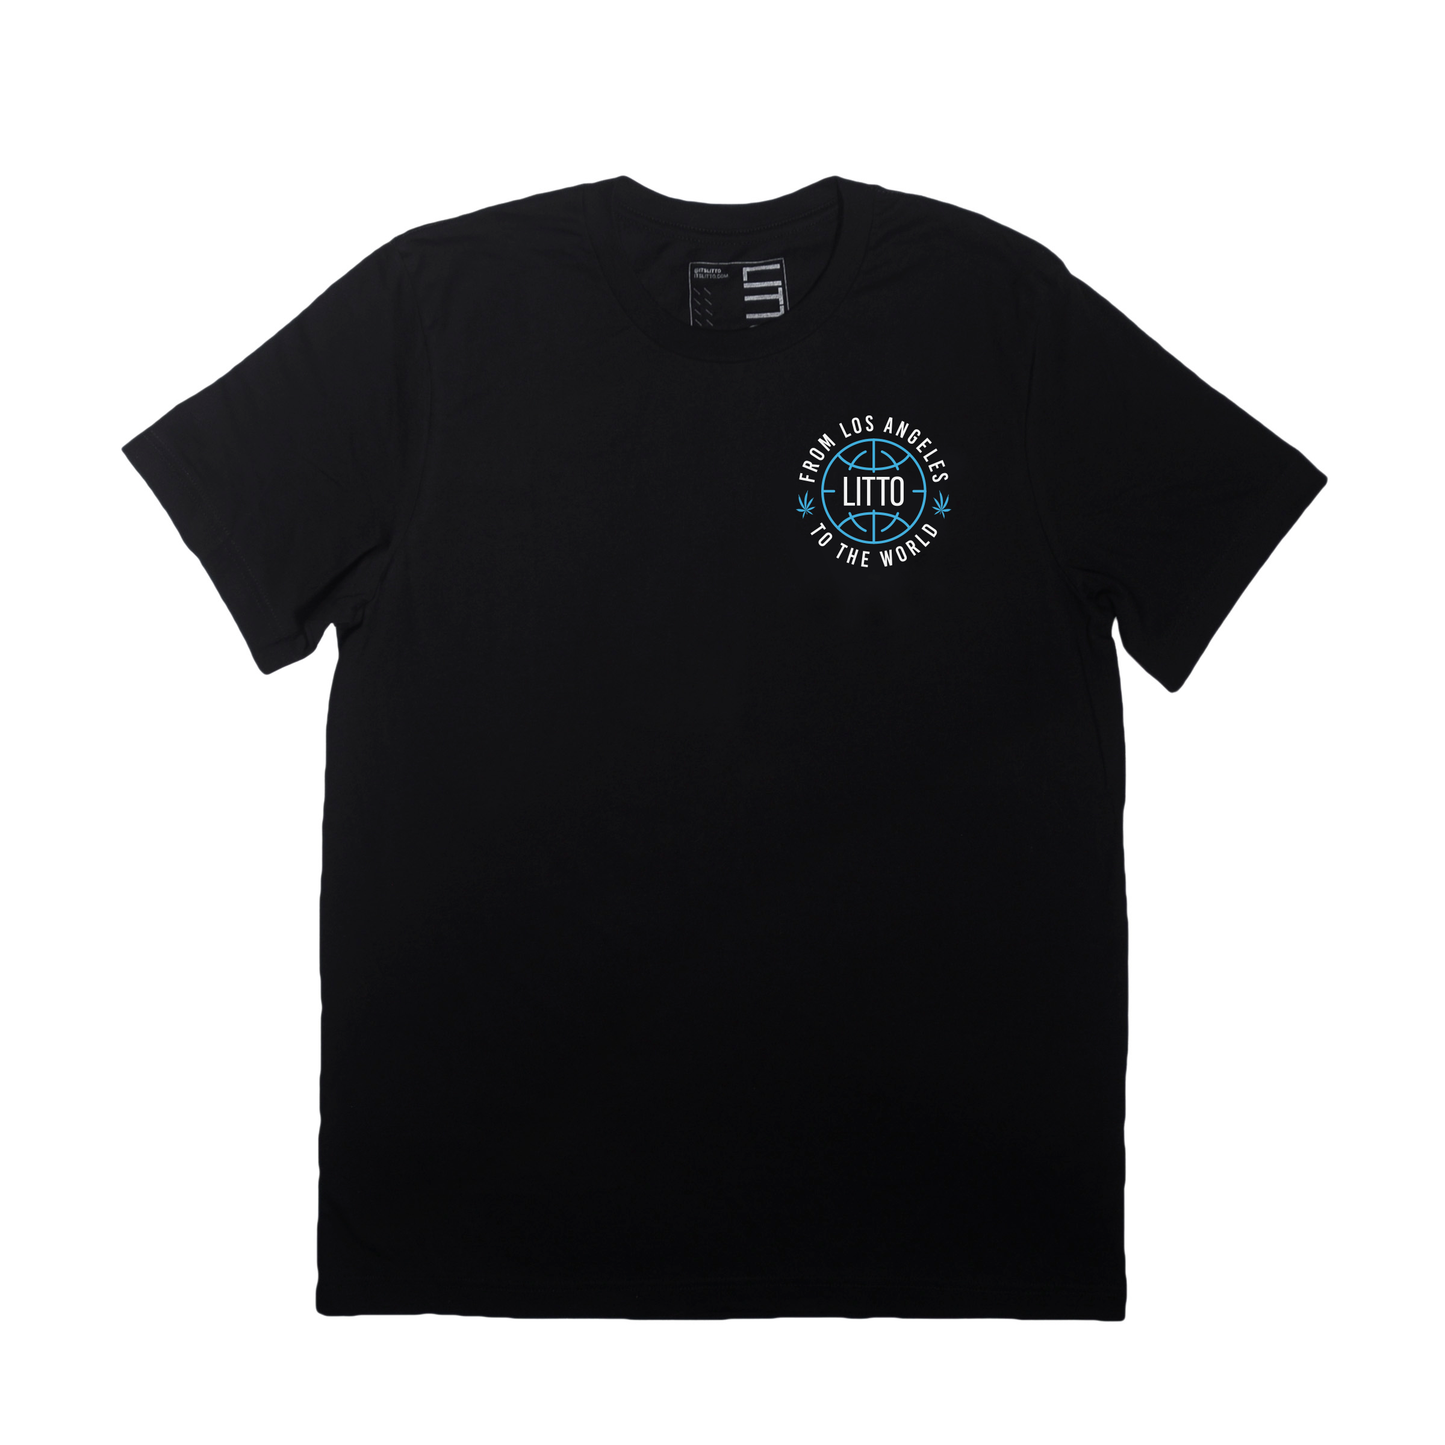 From LA T-Shirt (Black)